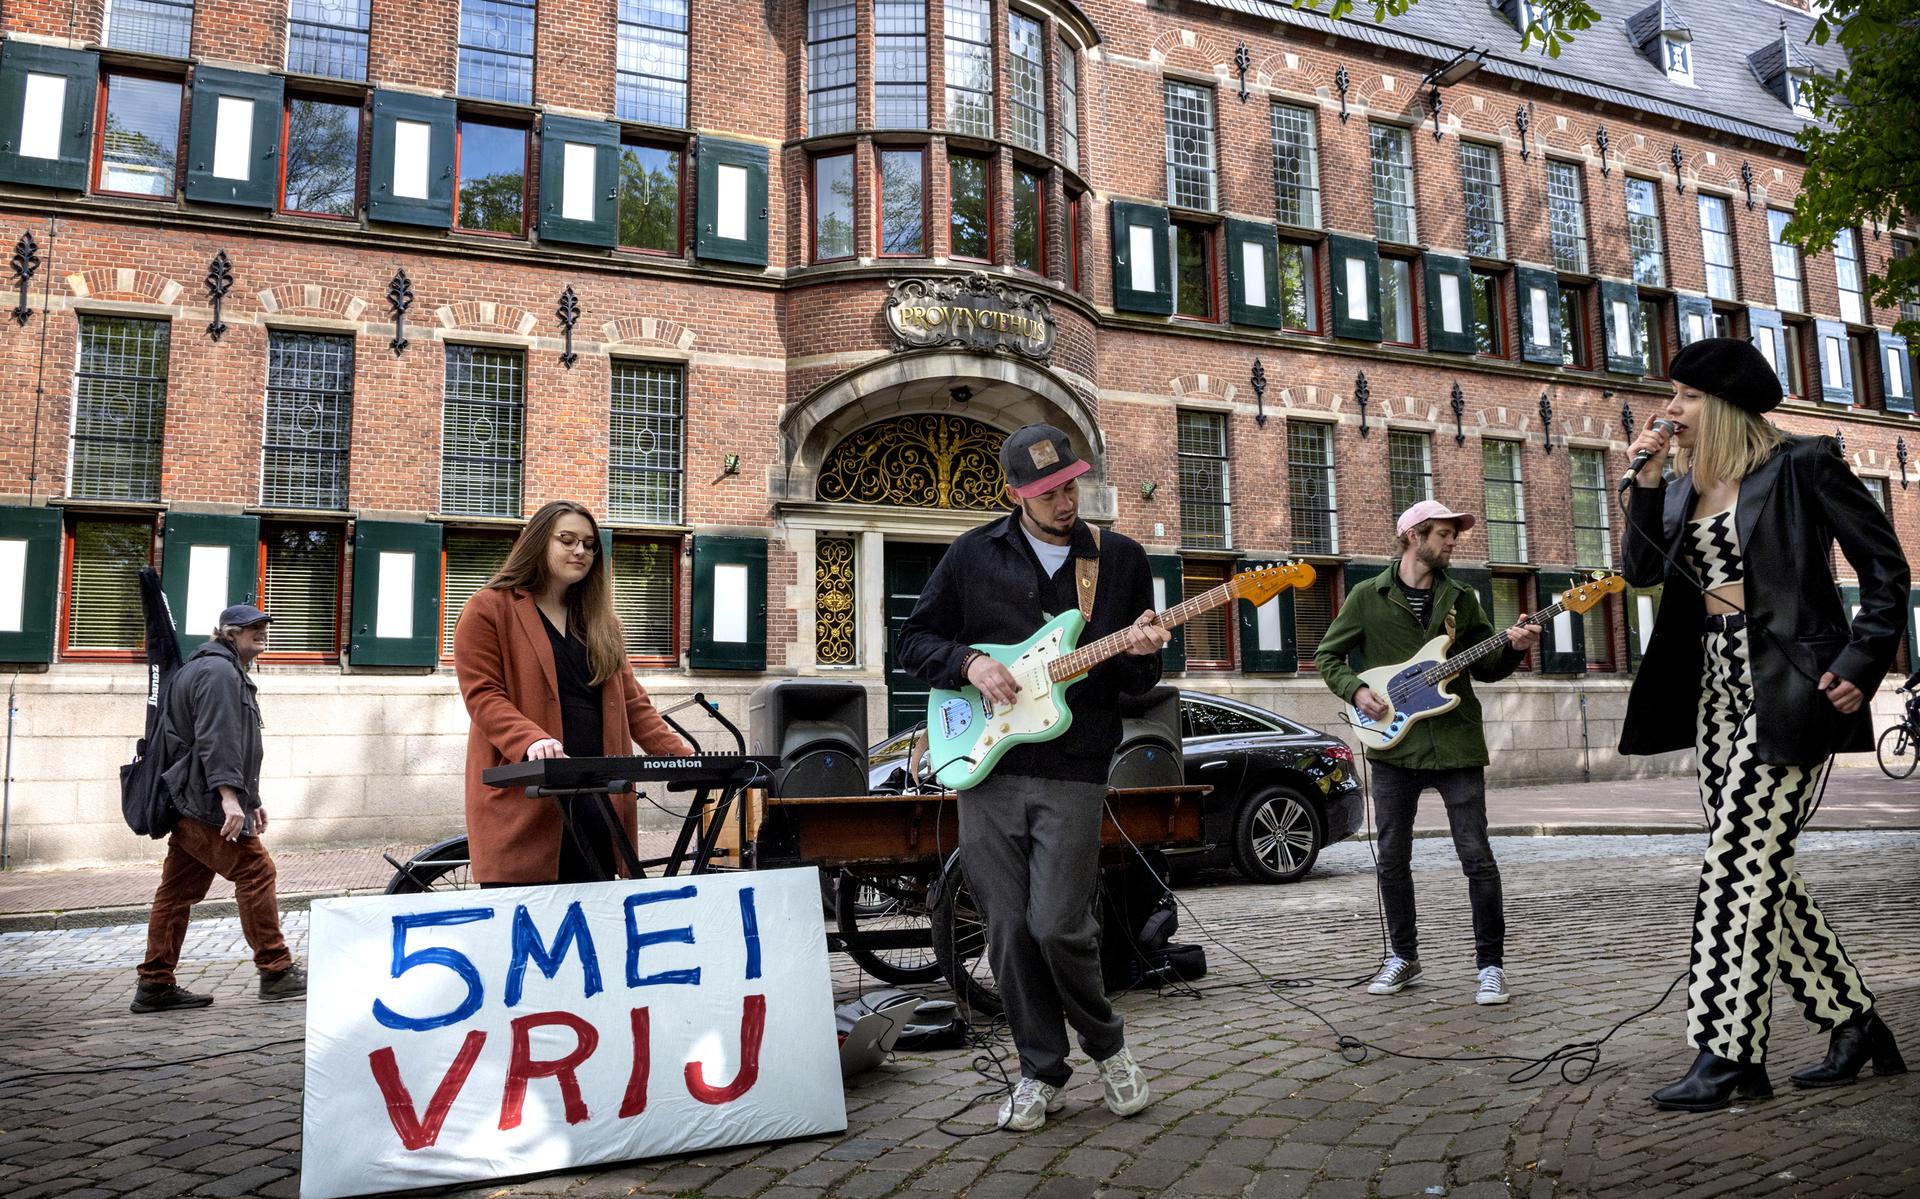 De band Waterleaf voor het Provinciehuis met v.l.n.r.: Iris (toetsen), Sander, Fedde en zangeres Margrieke.